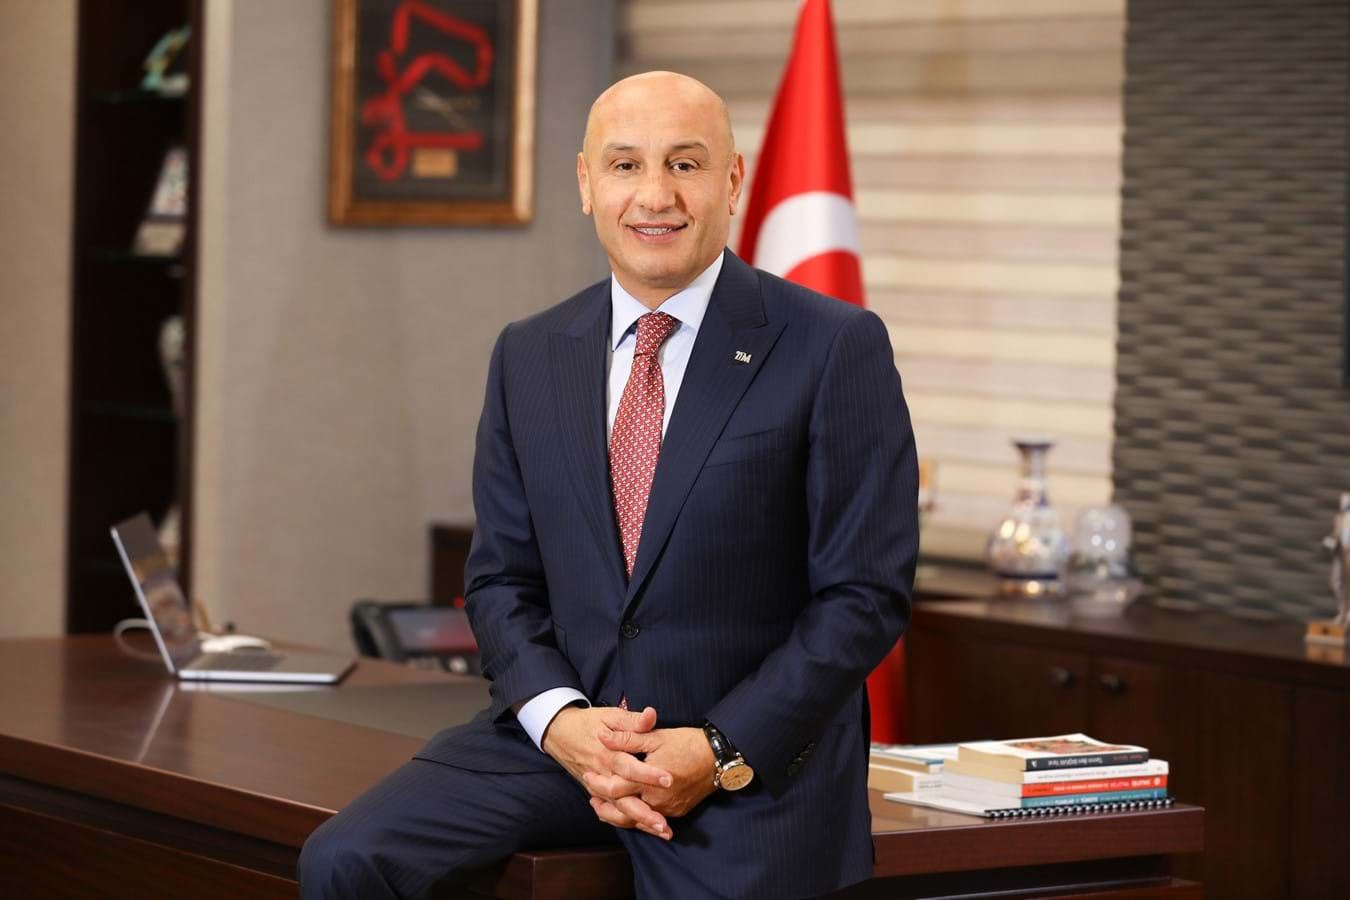 TİM Başkanı Mustafa Gültepe: "Çok sıkıntı... Pek çok sektörümüz için büyük sıkıntı"